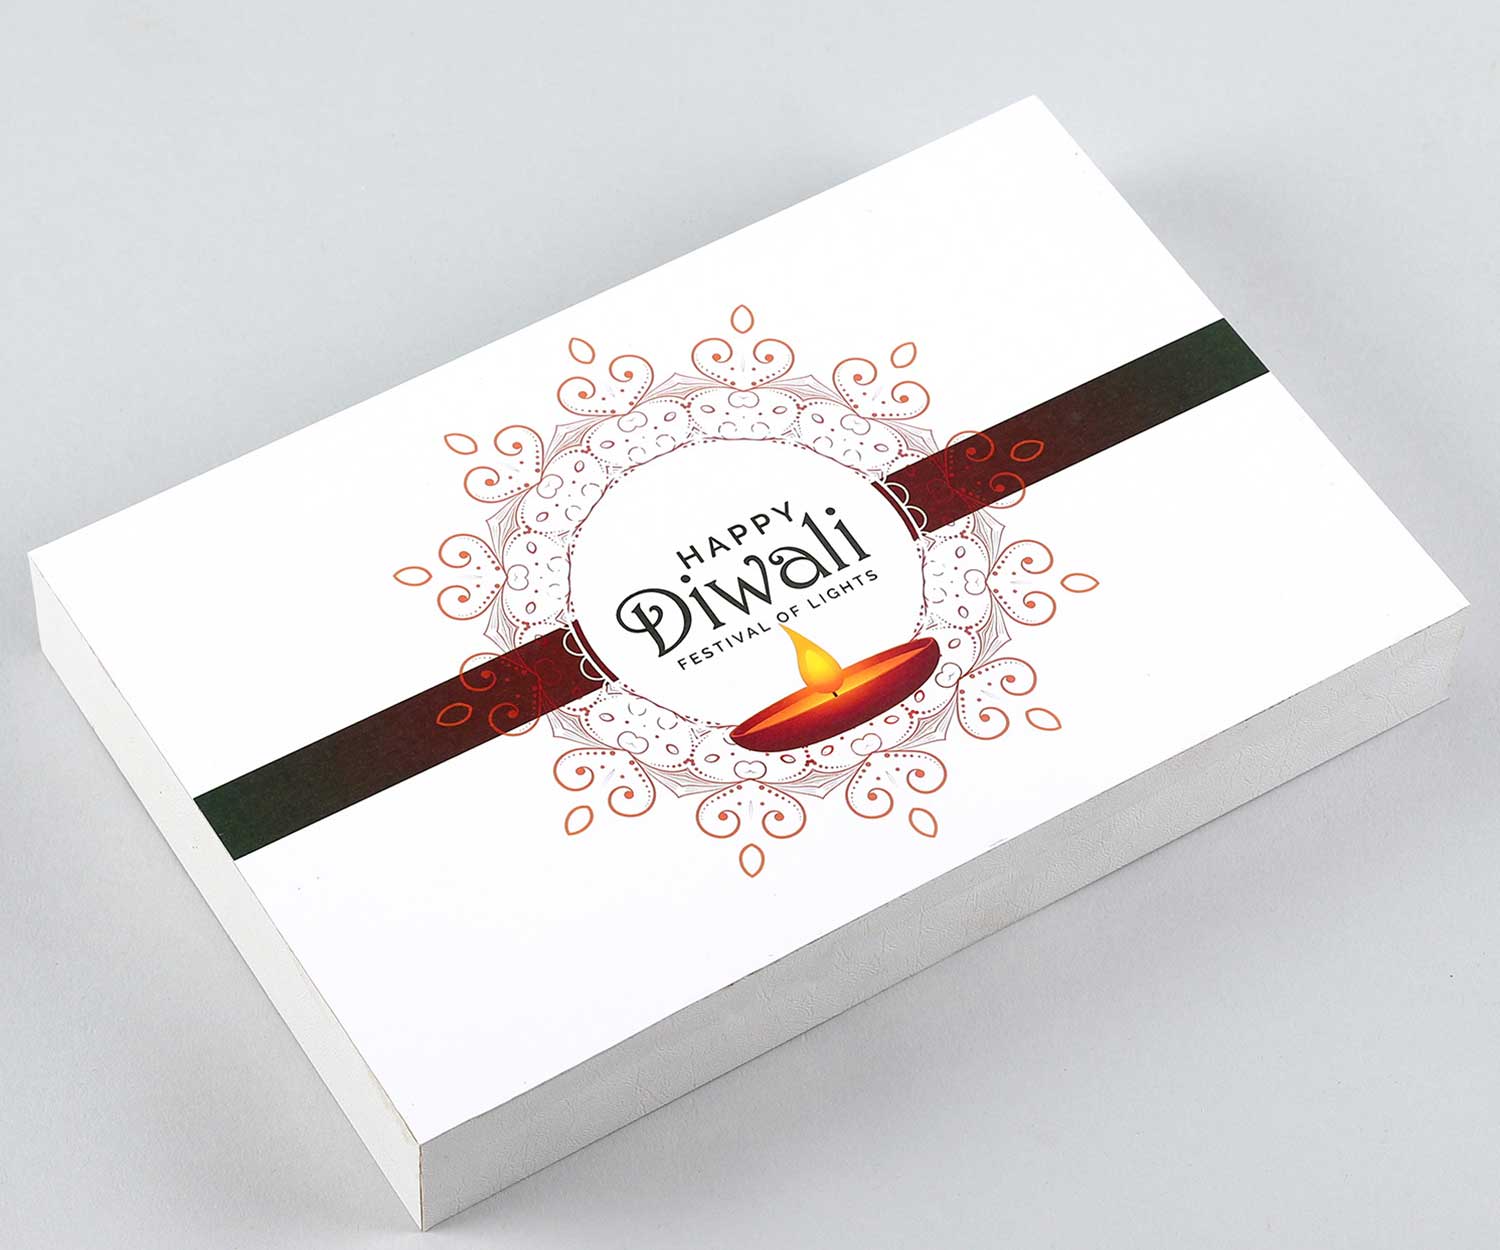 diwali gift box,diwali gift box ideas,diwali gift box crackers,diwali gift box design,diwali gift box singapore,diwali gift box uk,diwali gift box